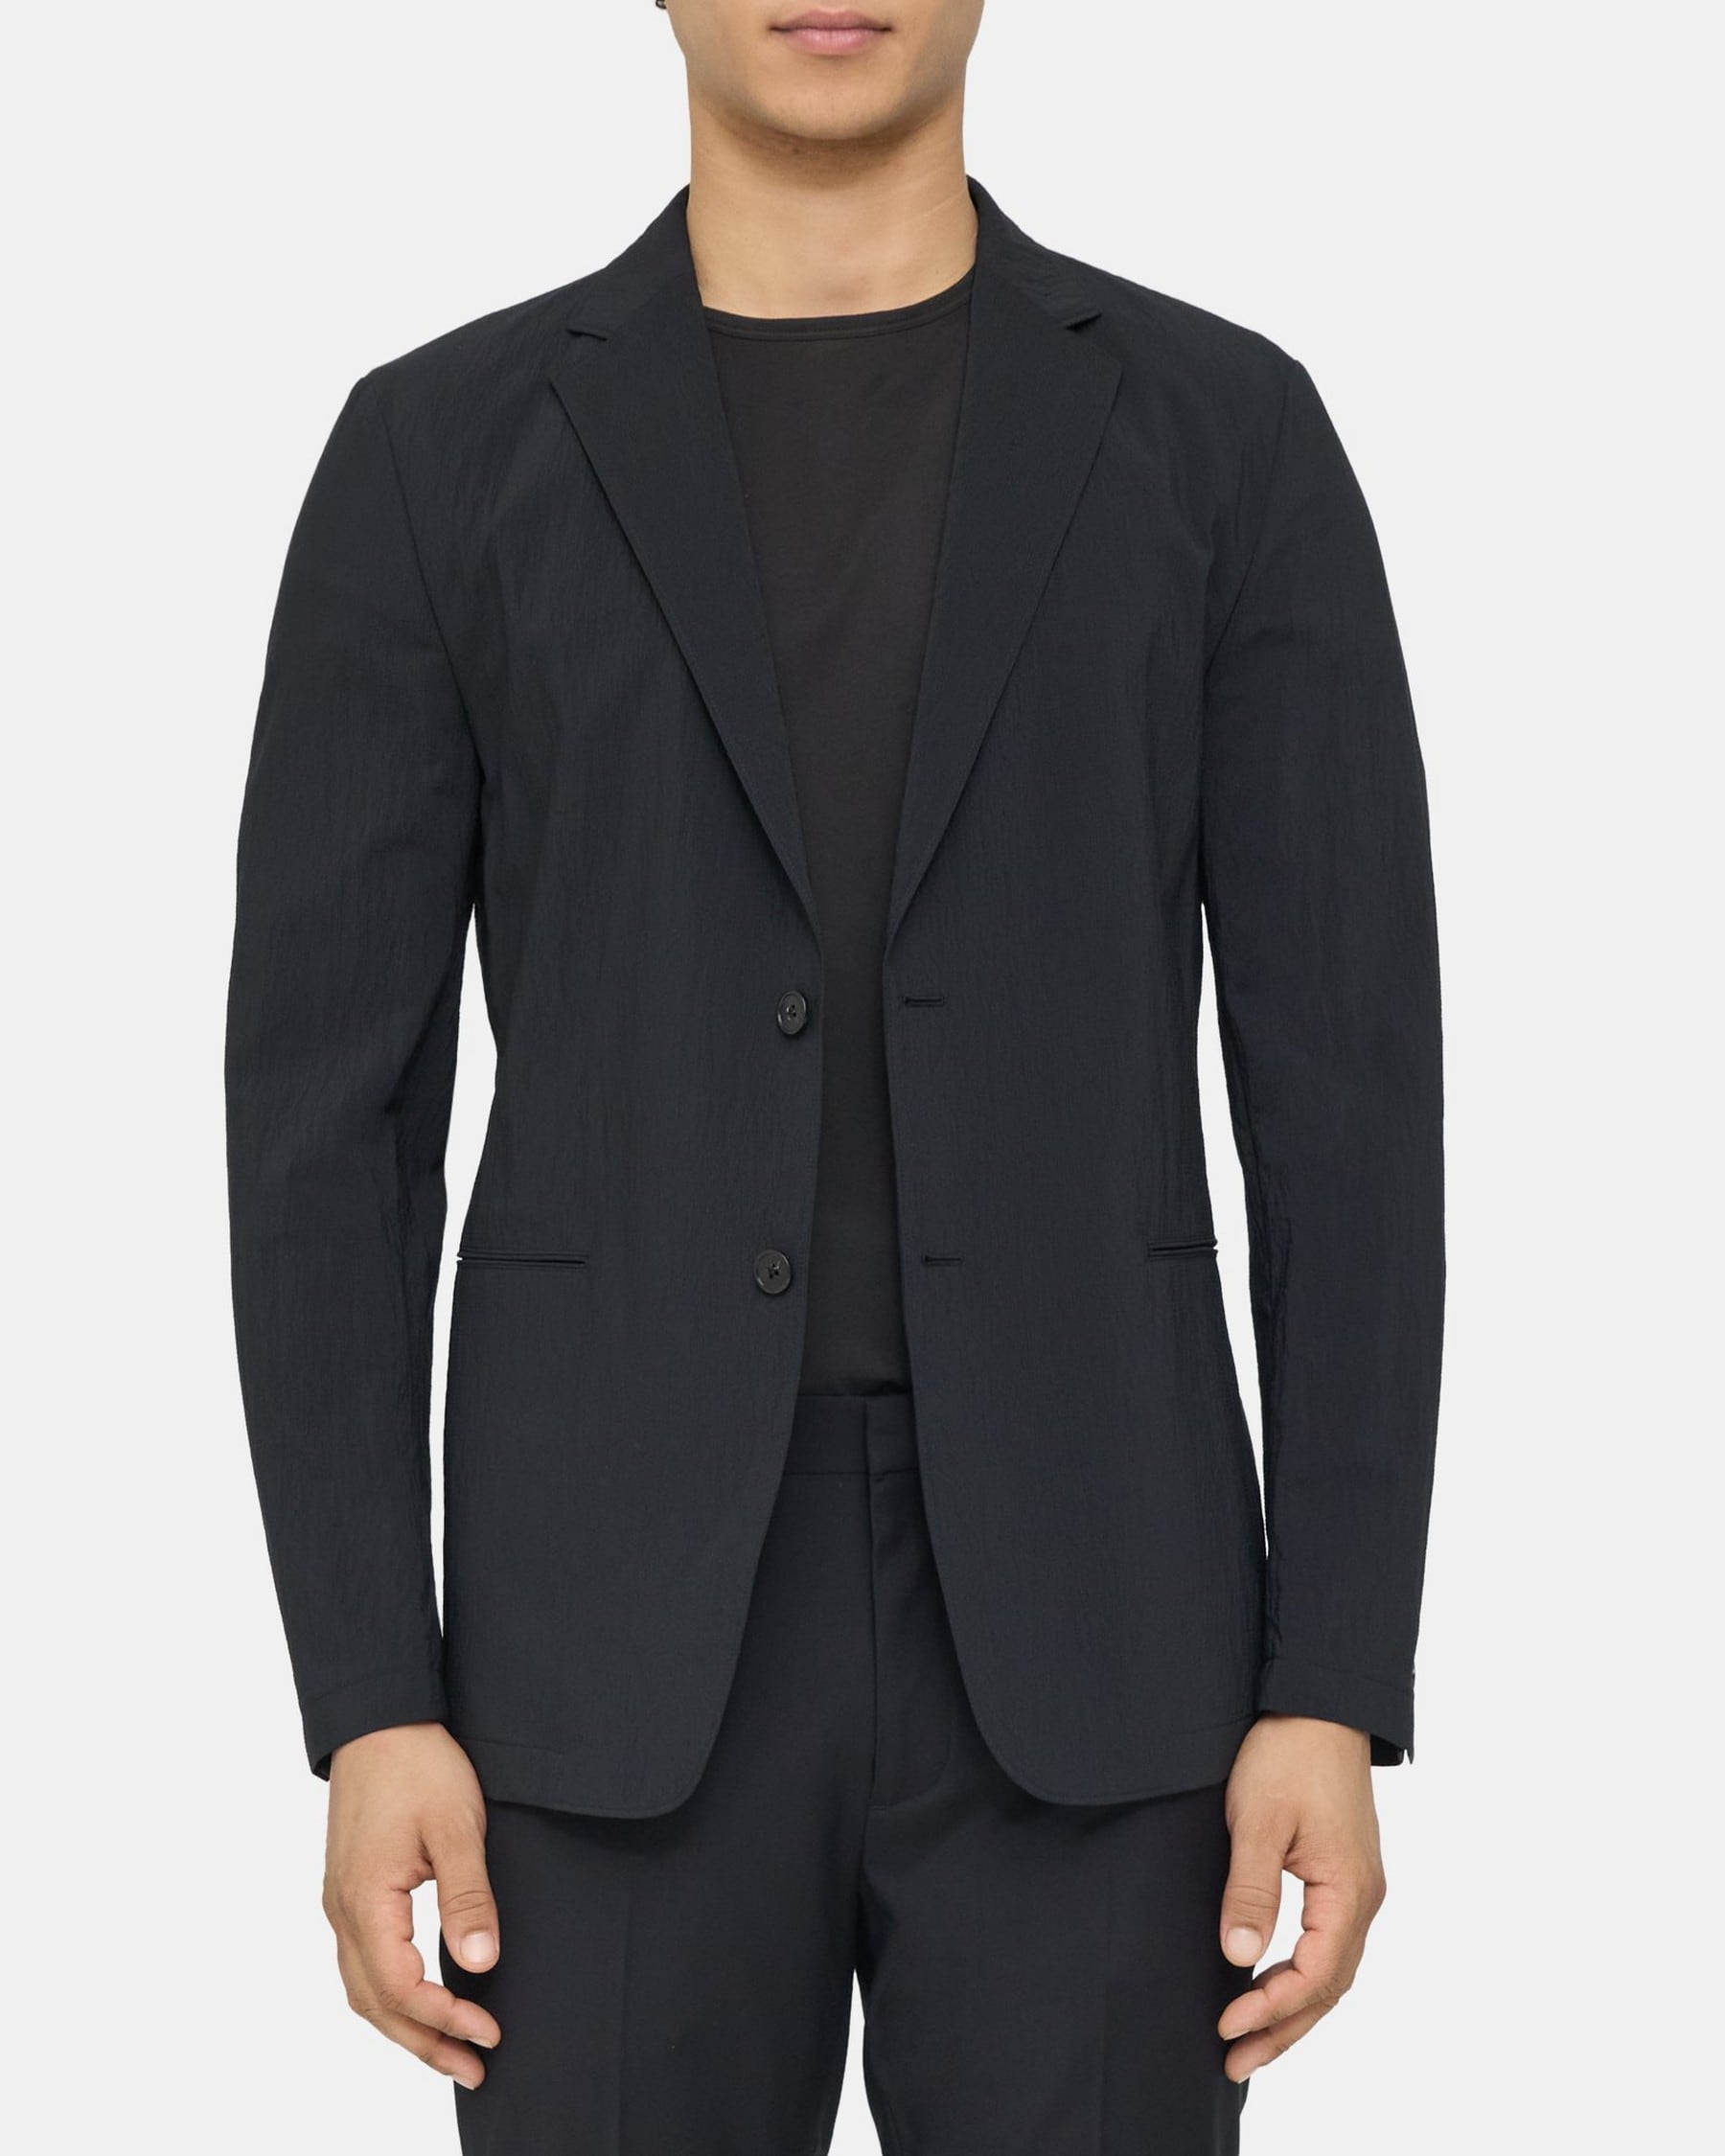 띠어리 Theory Unstructured Suit Jacket in Nylon Blend,BLACK